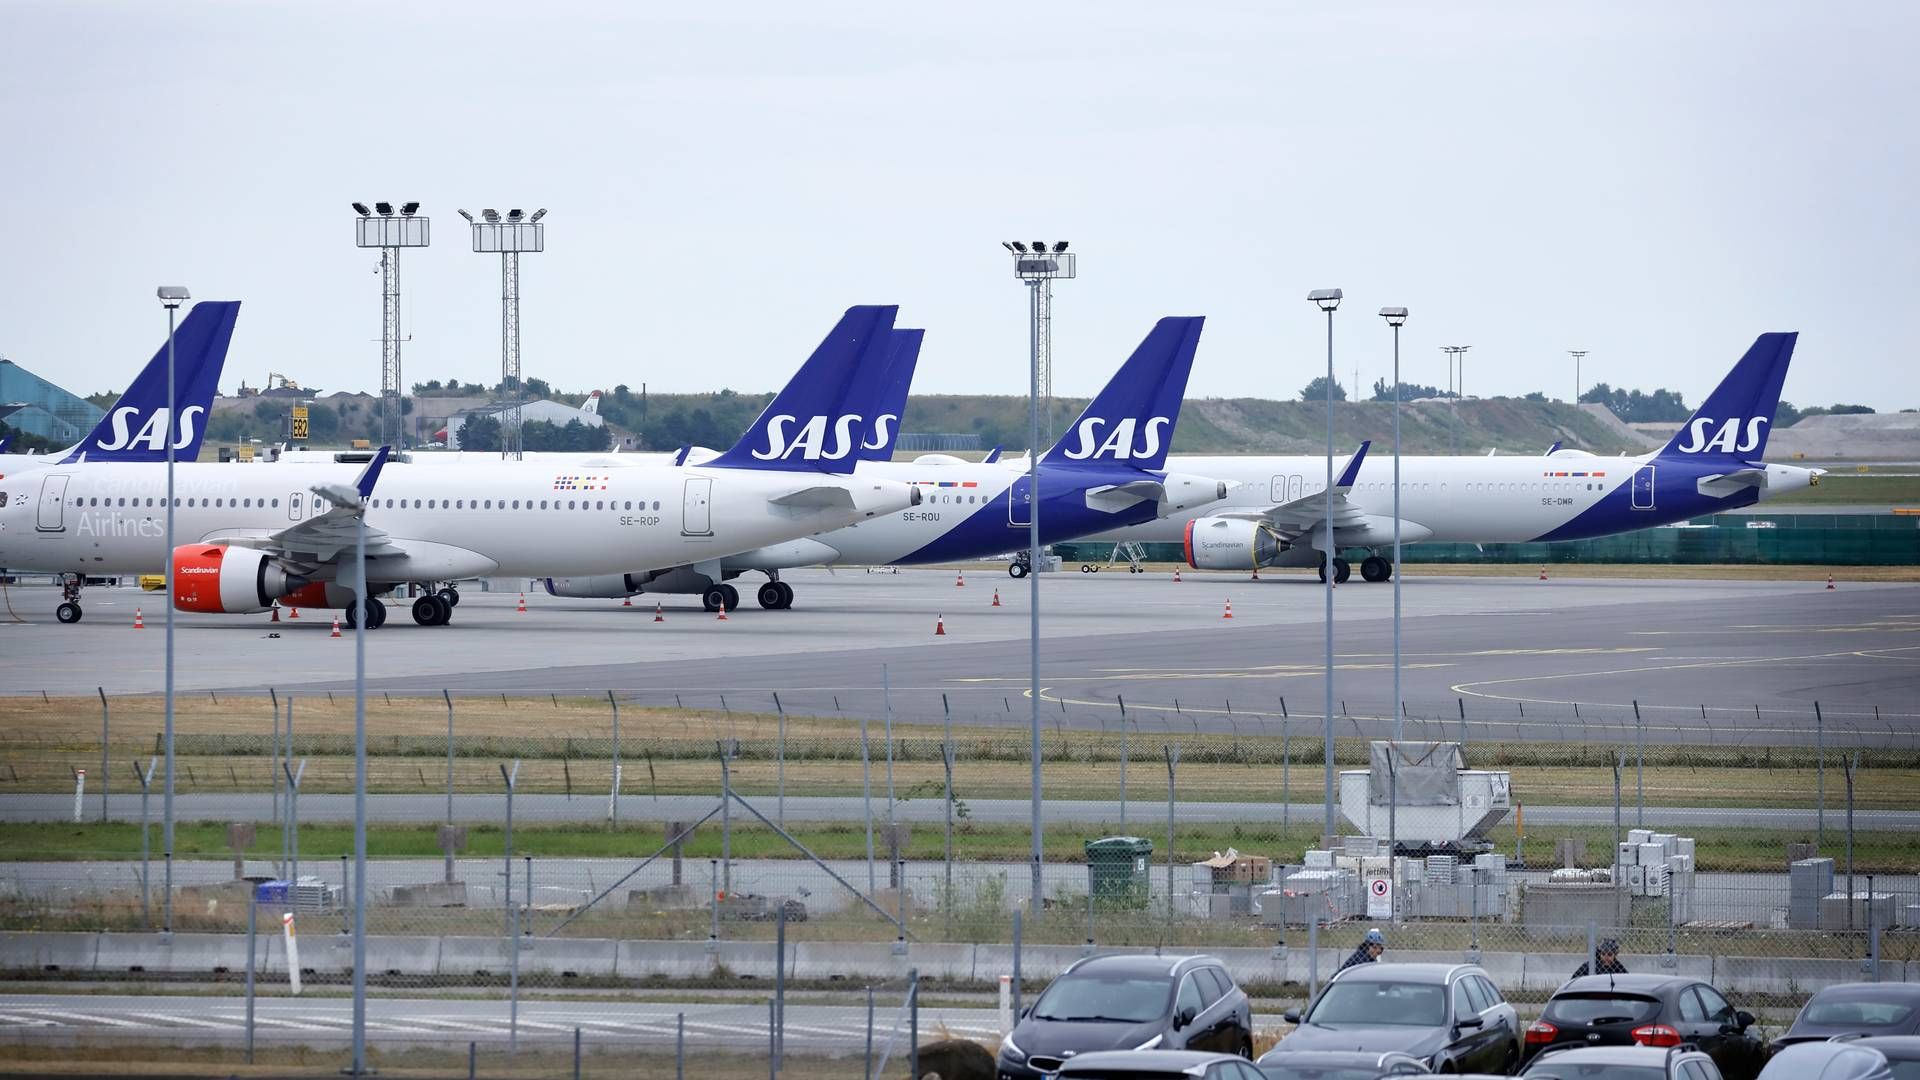 Flyselskabet SAS kan være på vej mod en afnotering, skriver Berlingske. | Foto: Jens Dresling/Ritzau Scanpix